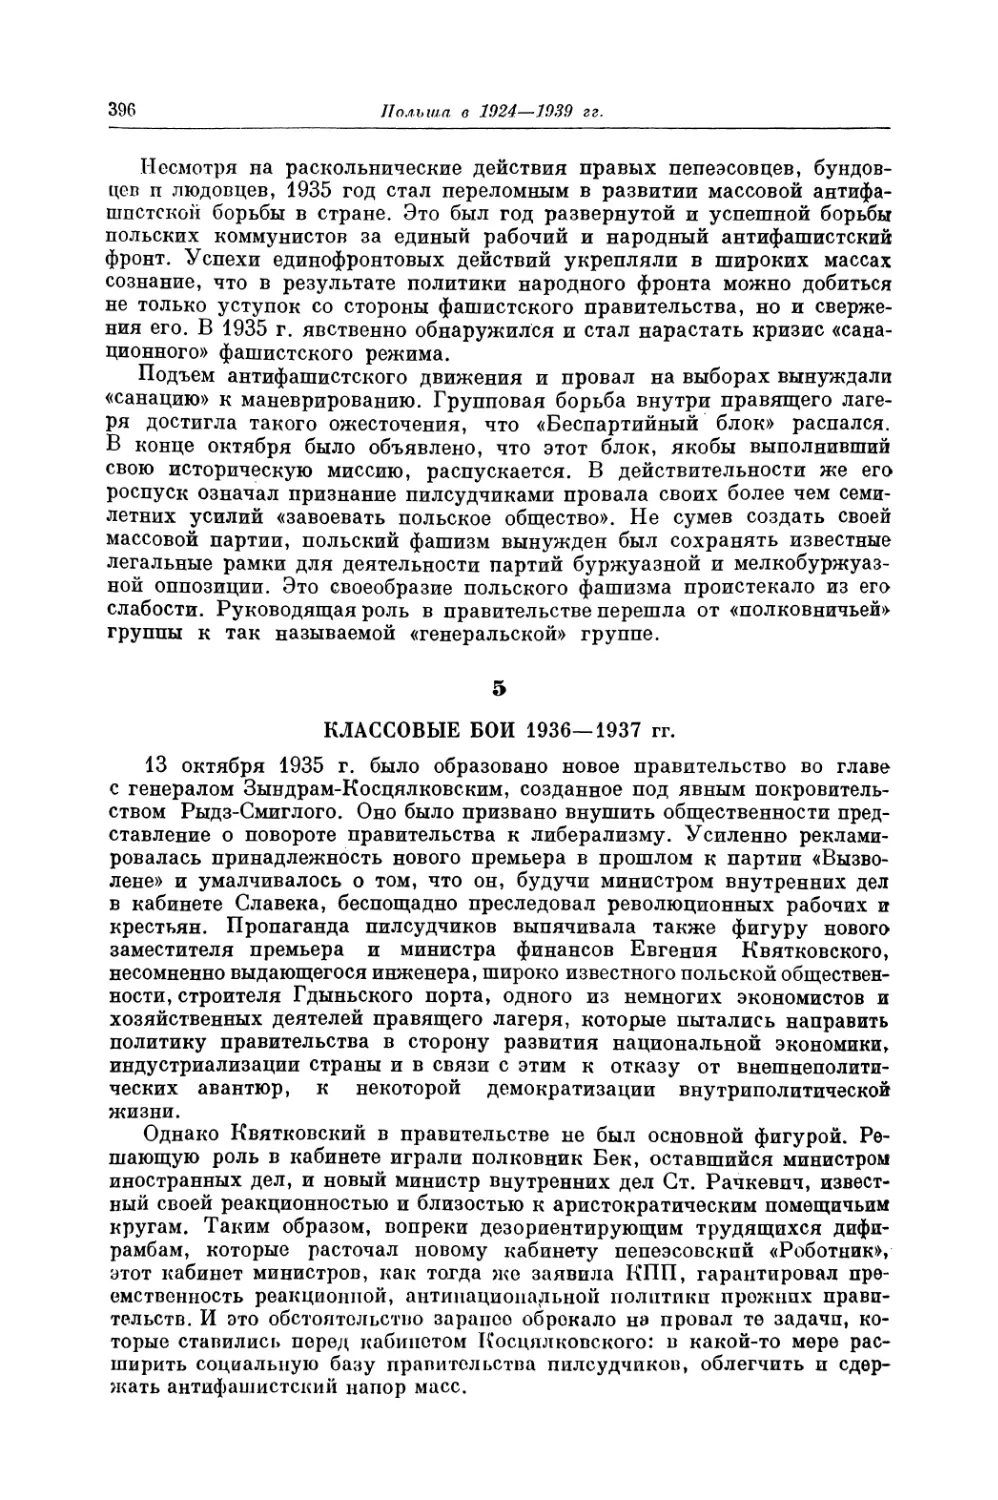 5. КЛАССОВЫЕ БОИ 1936—1937 гг.